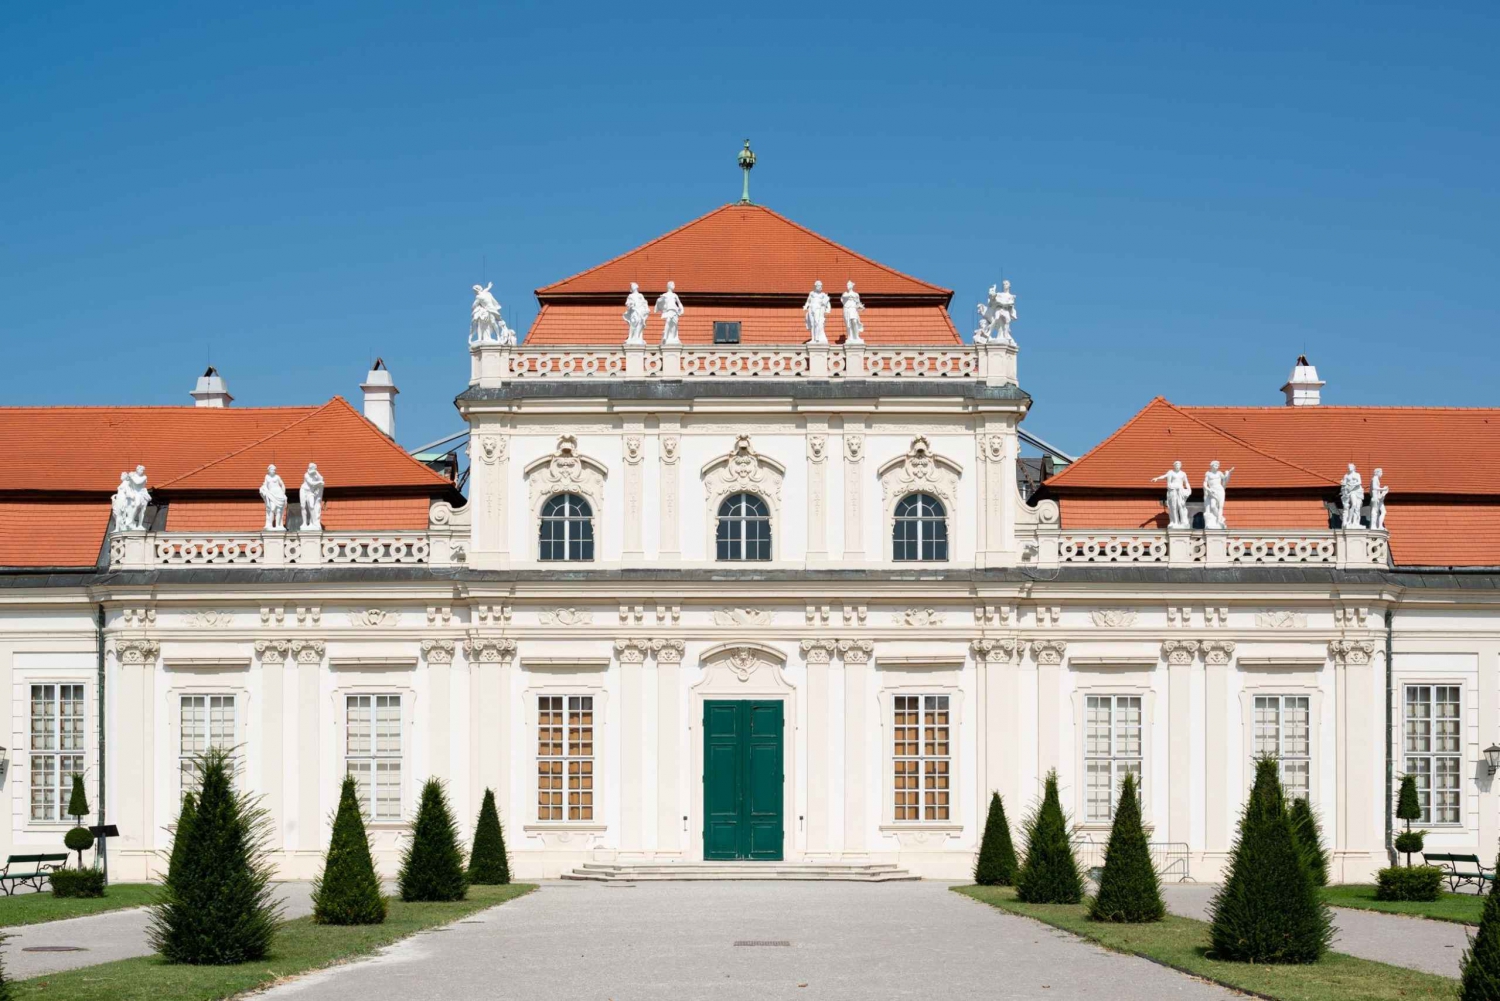 Wenen: Lower Belvedere toegangsbewijs & tijdelijke tentoonstellingen